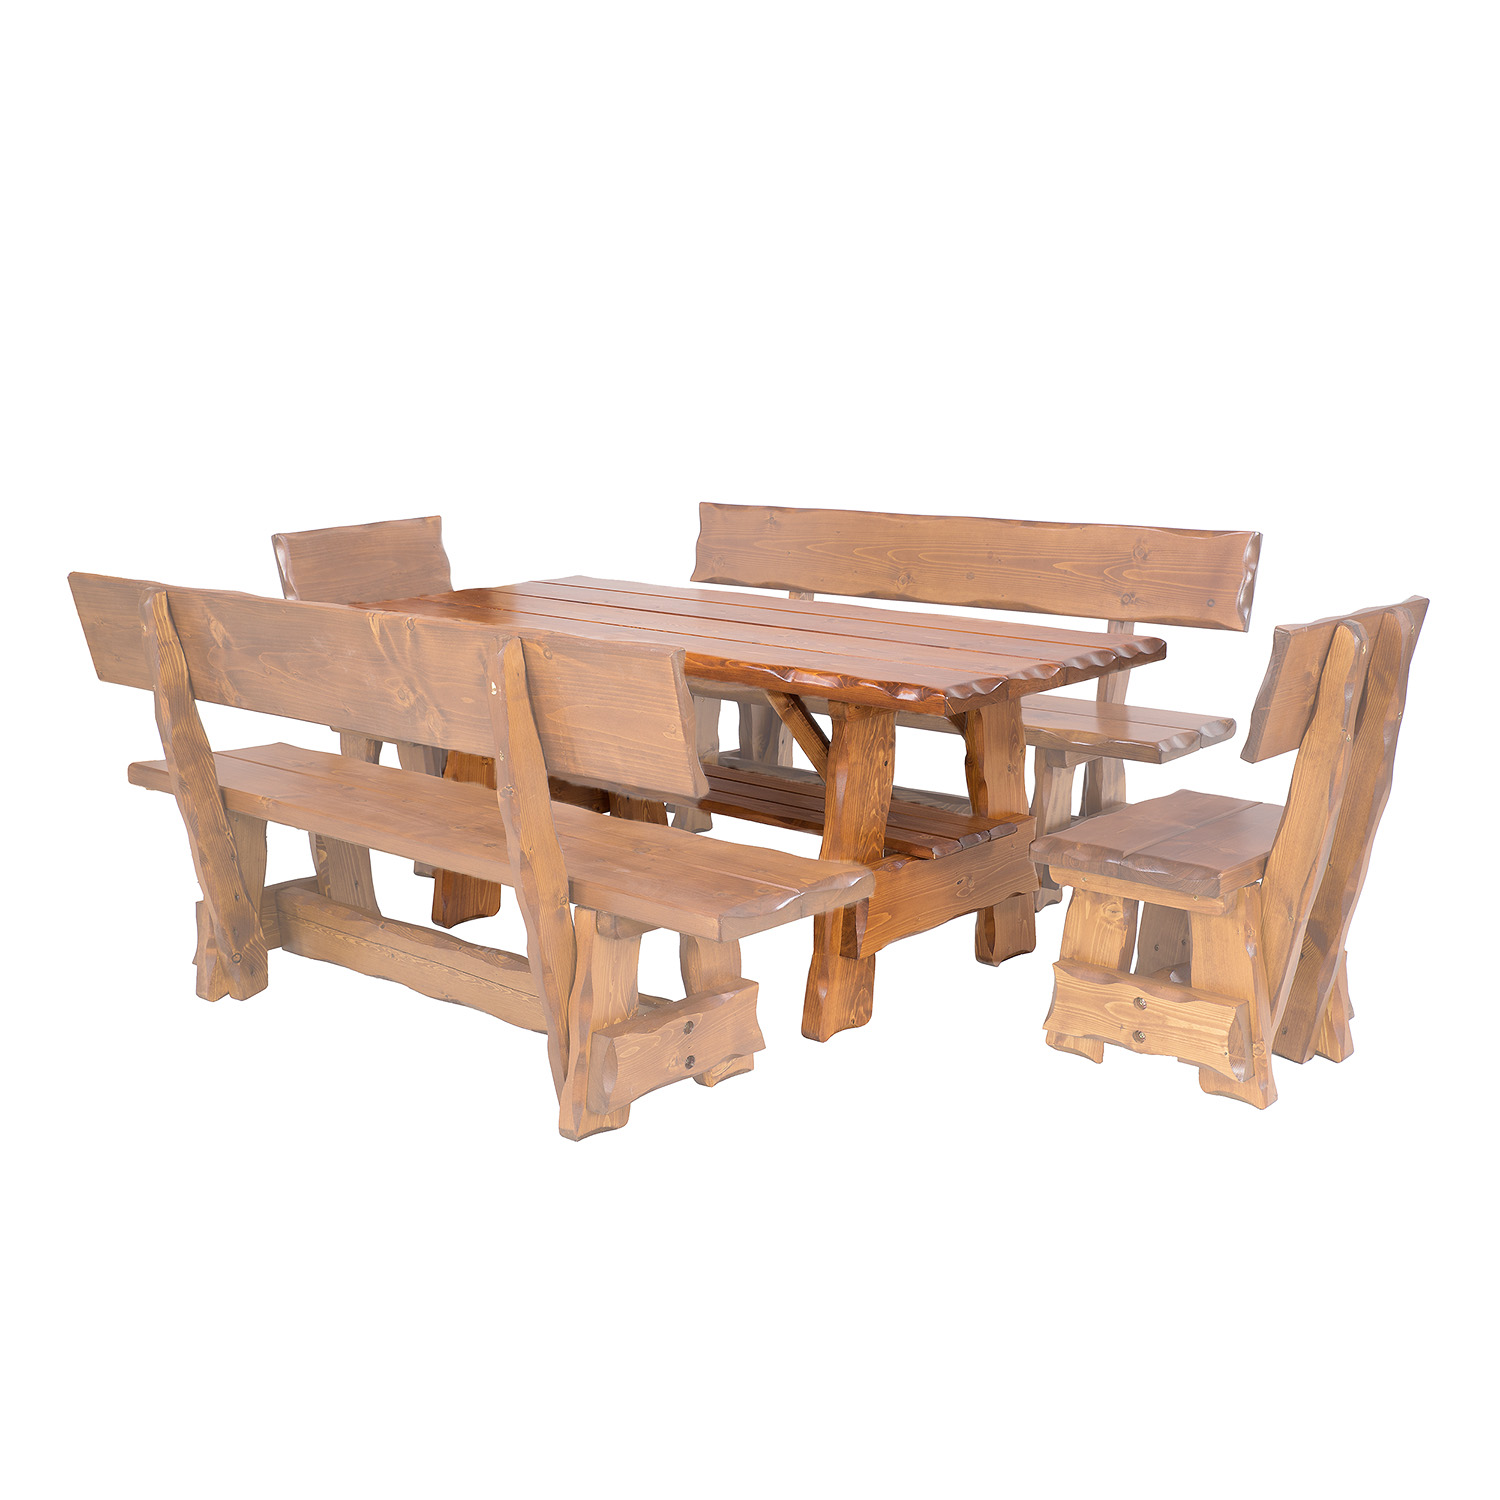 BEN - zahradní stůl ze smrkového dřeva, lakovaný 200x80x83cm - Týk lak